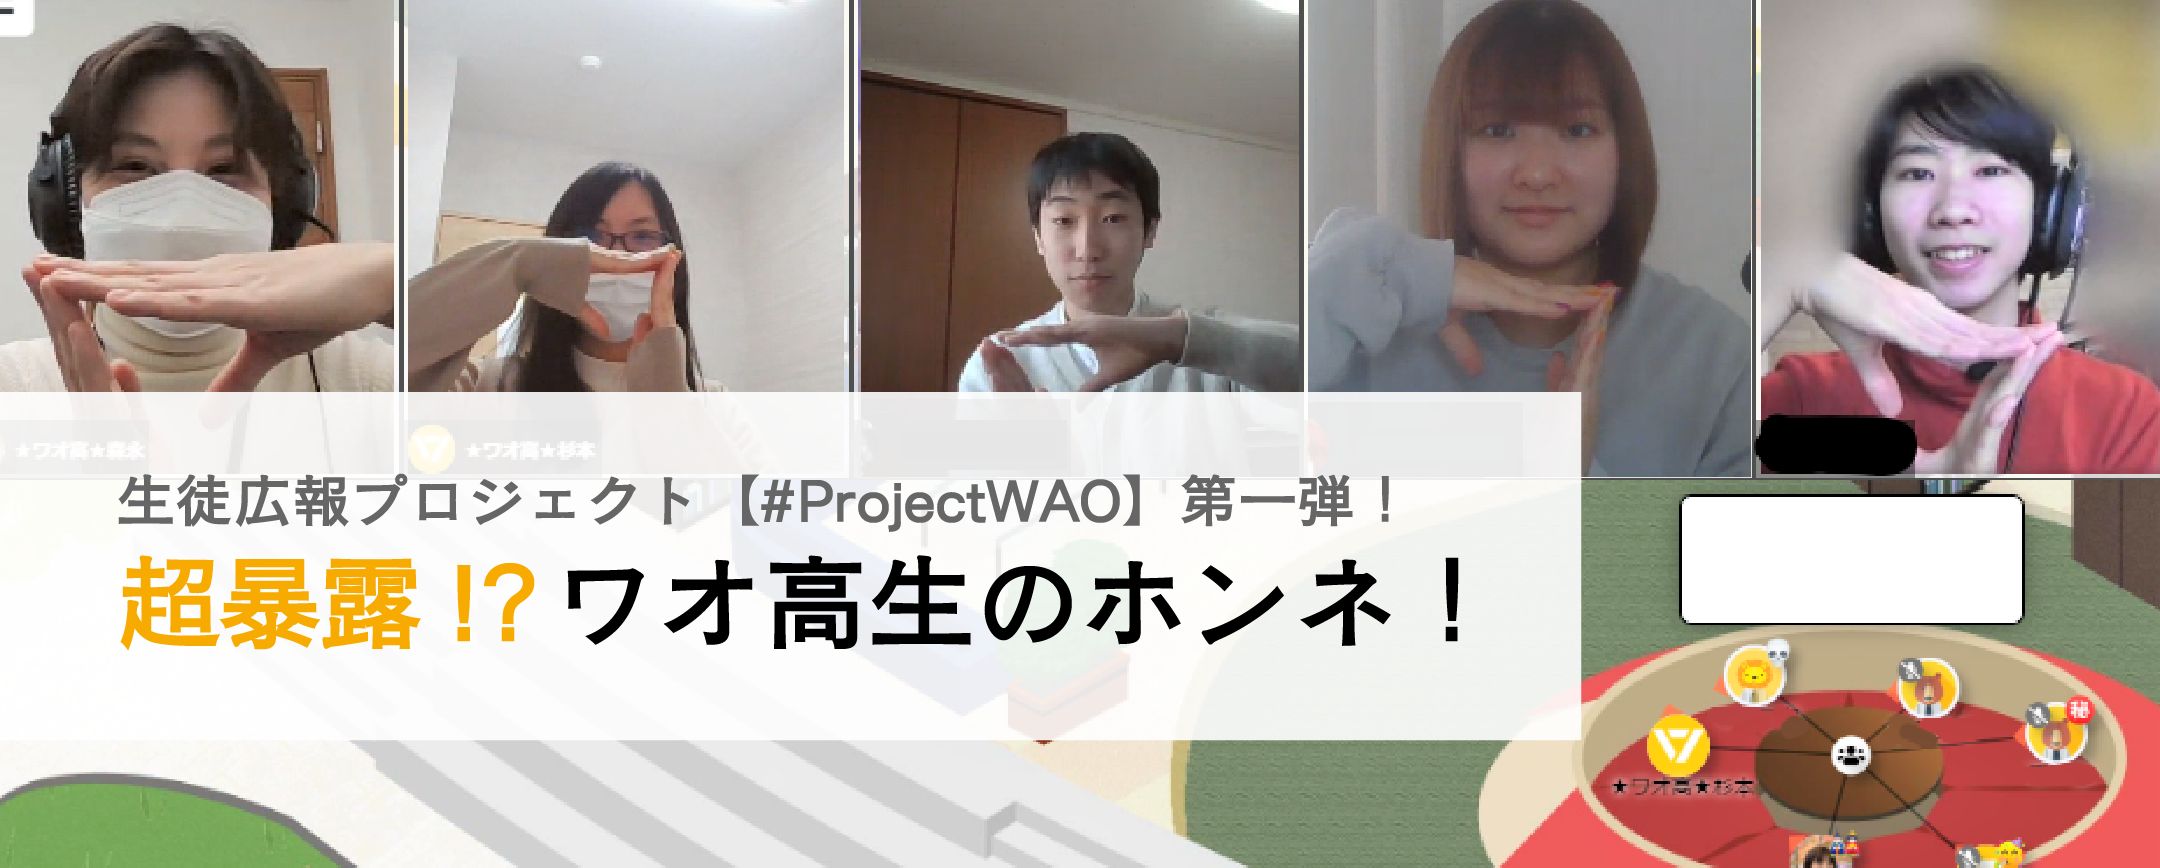 生徒広報プロジェクト【#ProjectWAO】第一弾！超暴露！？ ワオ高生のホンネ！